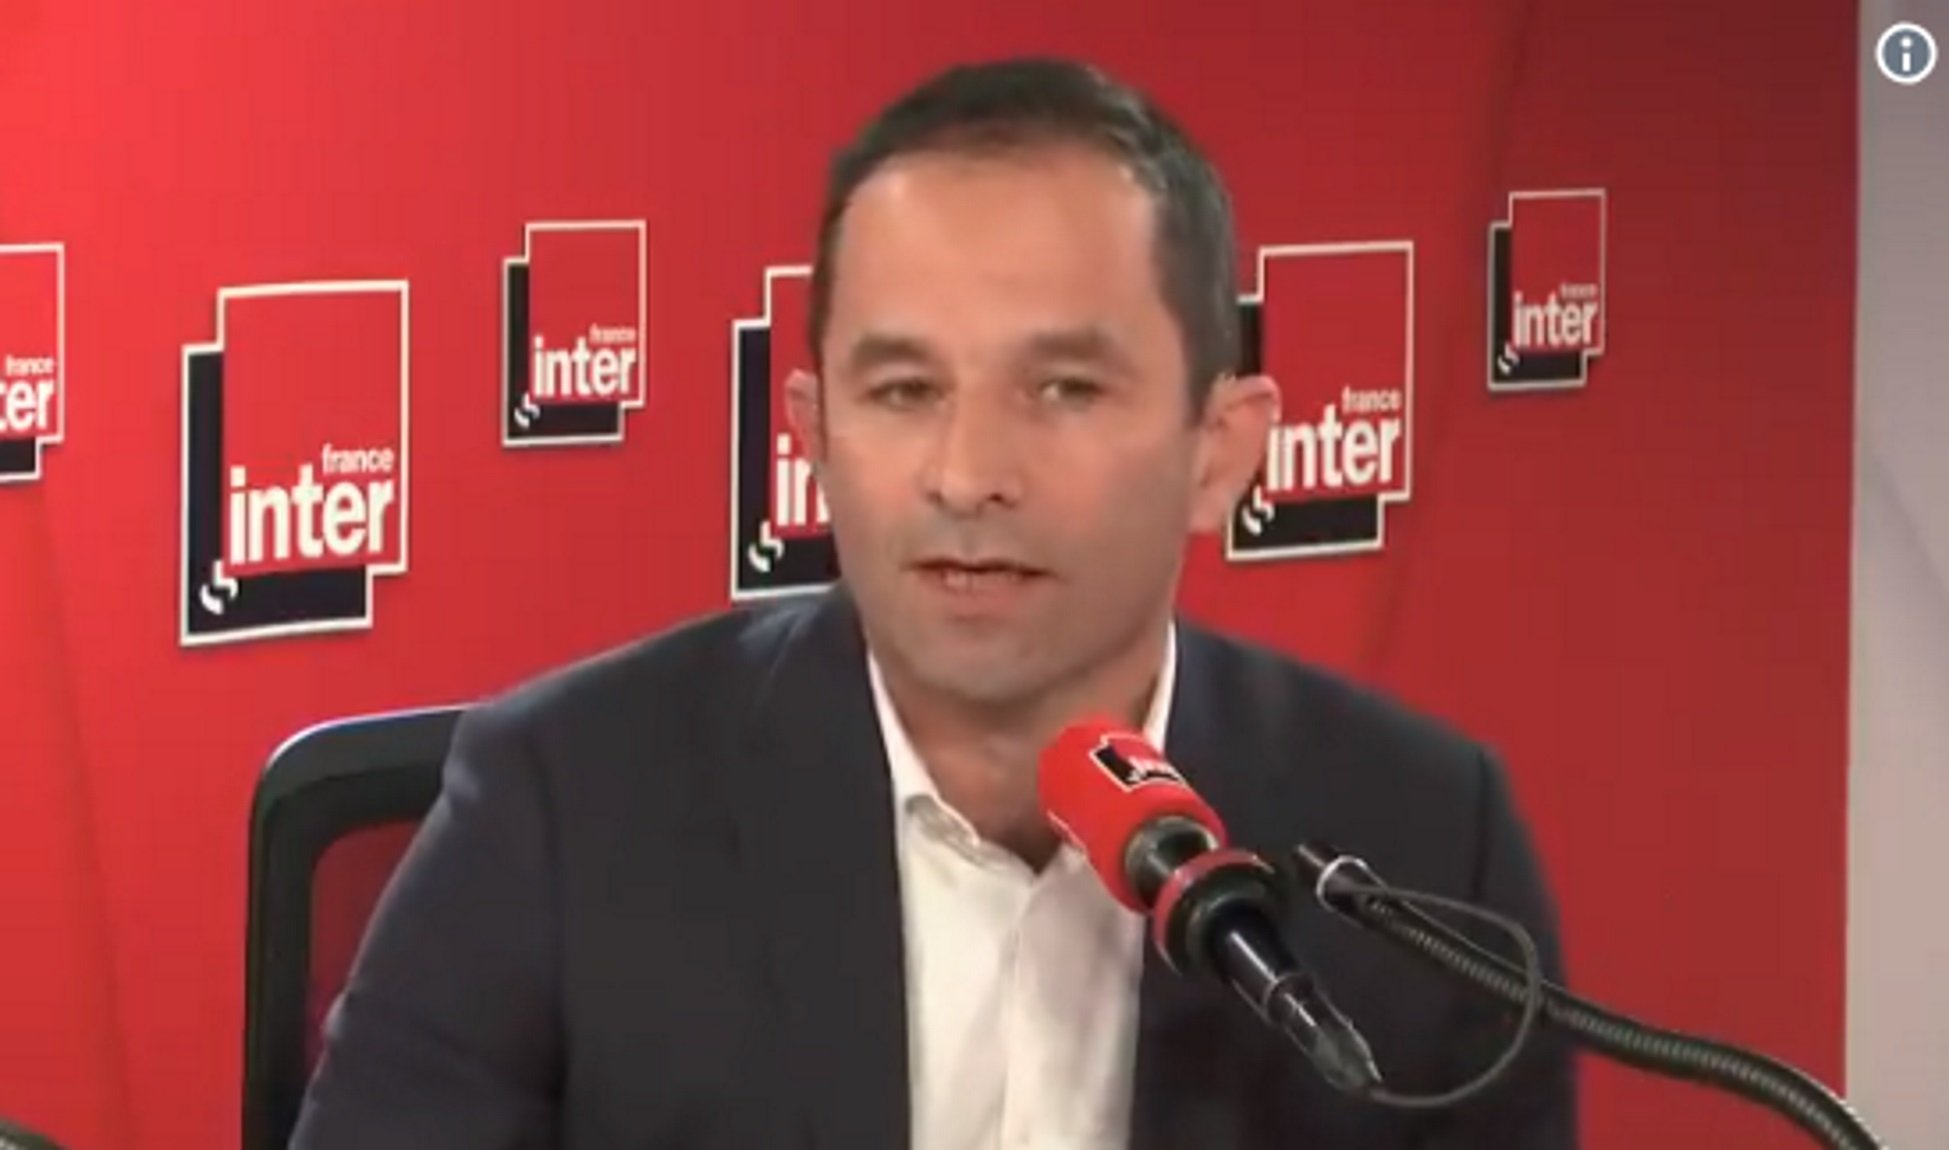 Hamon denuncia a France Inter la regressió democràtica a Espanya i Polònia